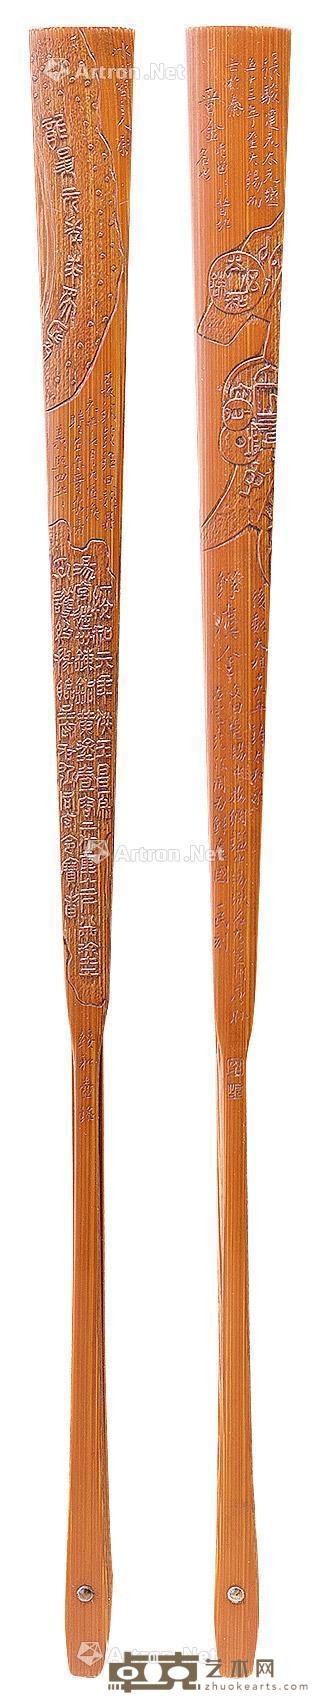  竹刻古泉纹扇骨 长31.8cm